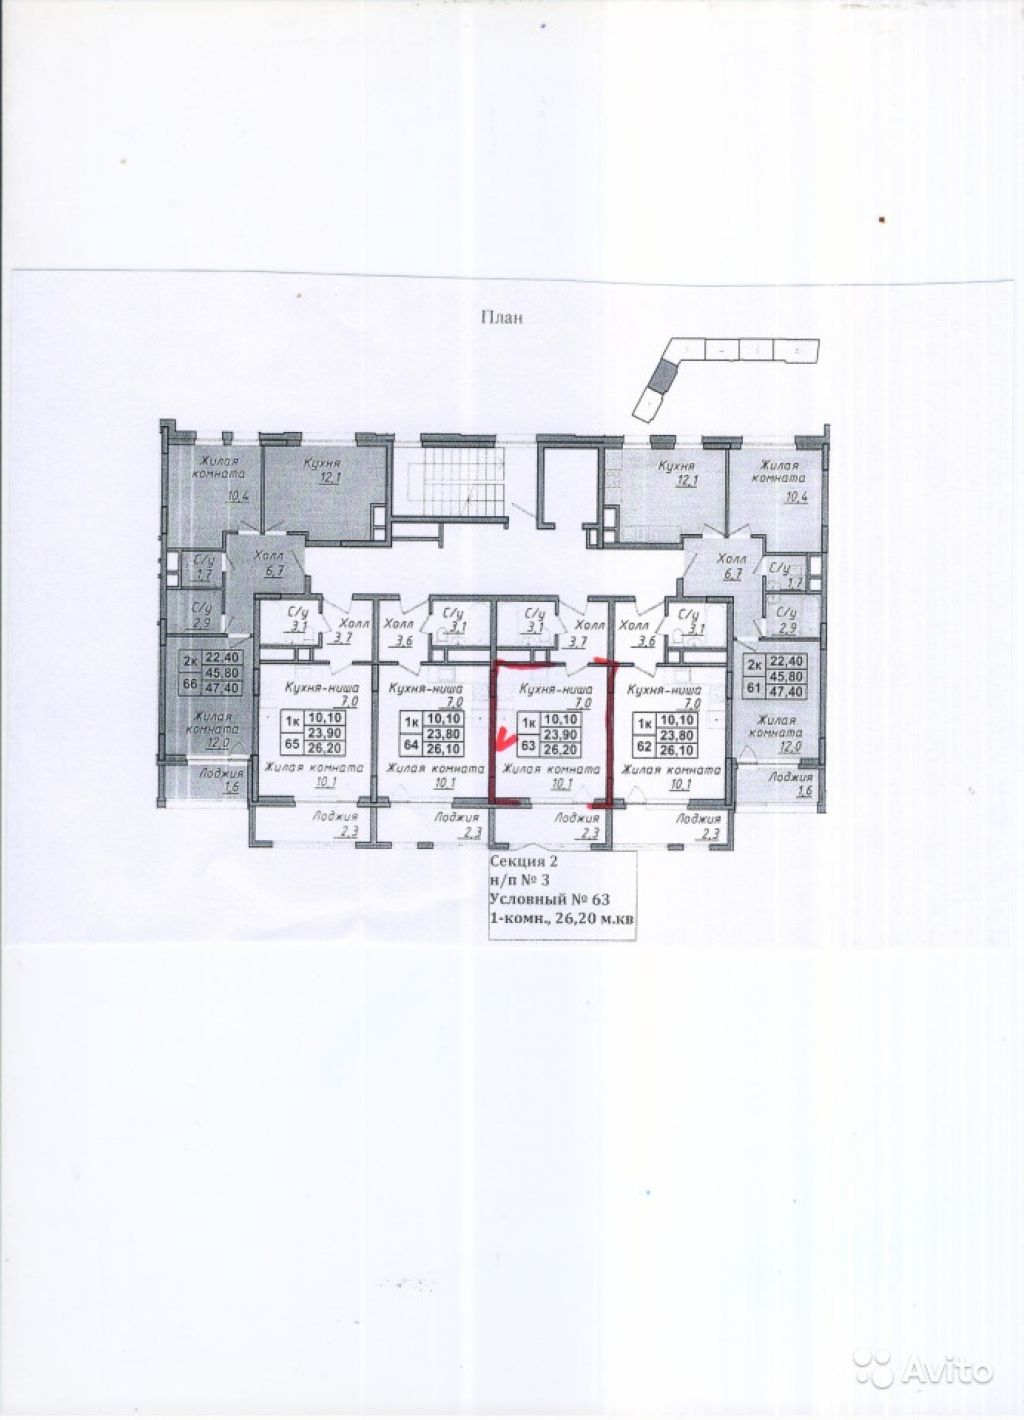 Продам квартиру в новостройке Мкрн «Северный» Студия 28 м² на 4 этаже 14-этажного монолитного дома , тип участия: ДДУ в Москве. Фото 1